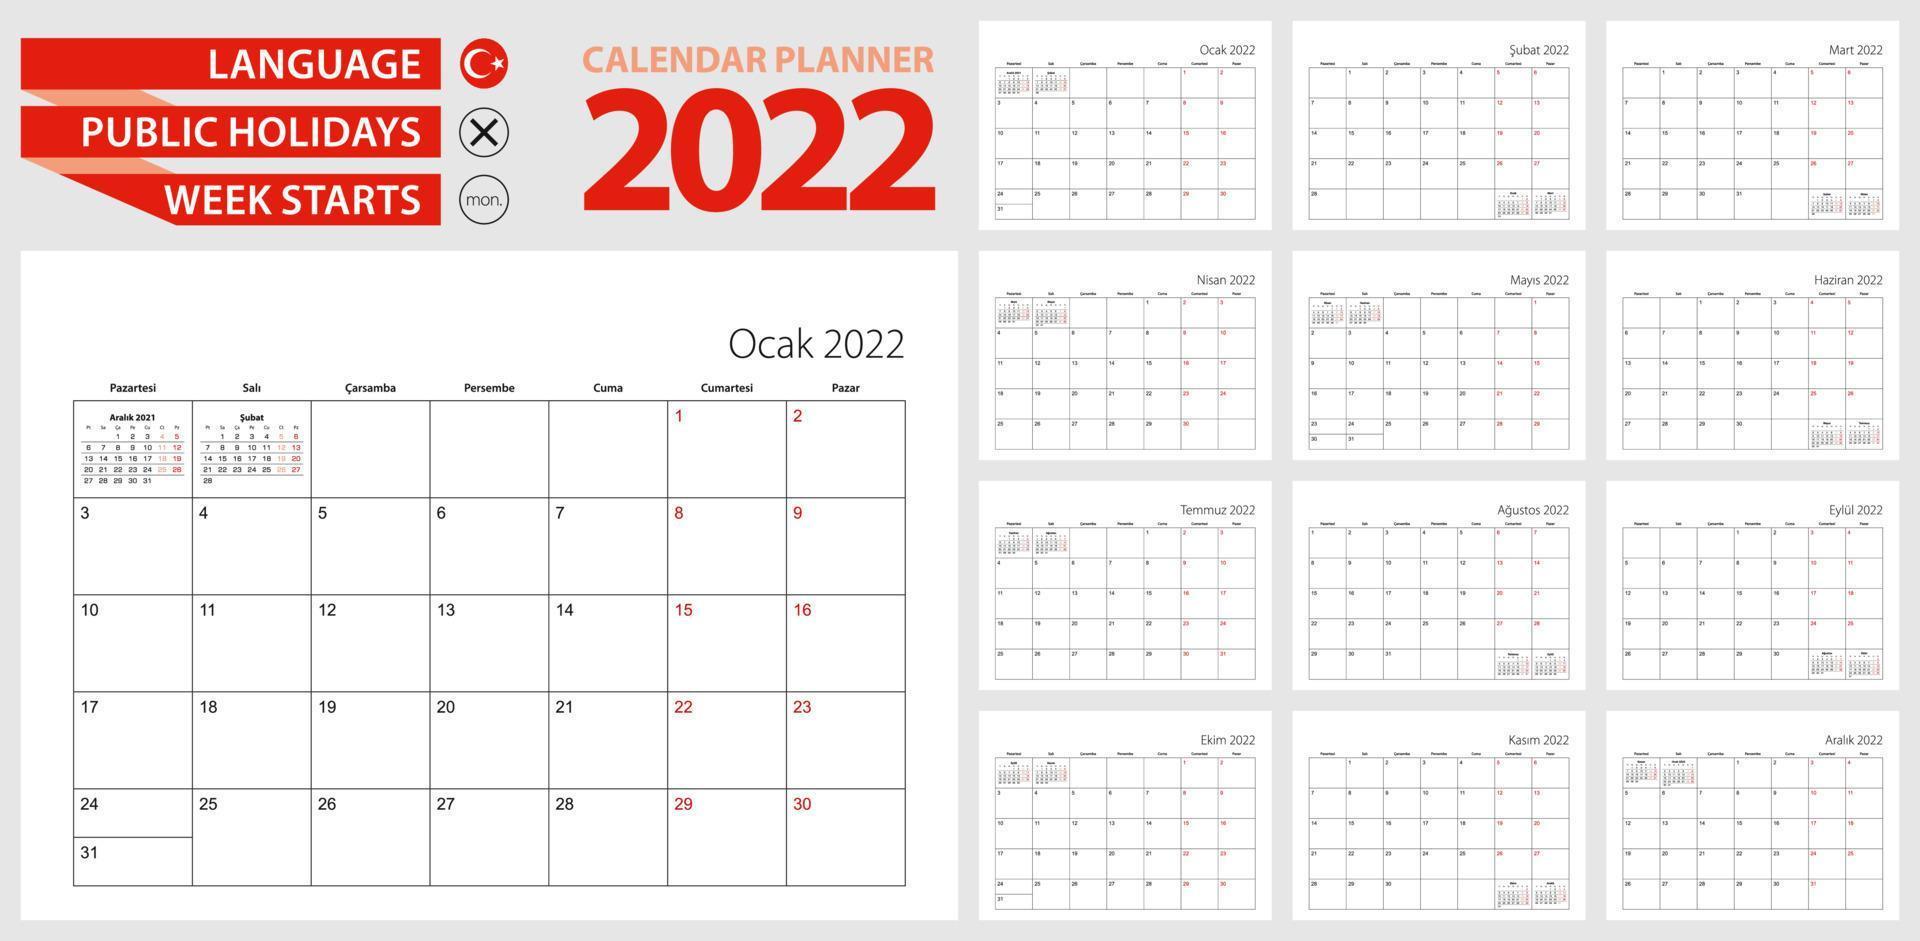 pianificatore del calendario turco per il 2022. lingua turca, la settimana inizia da lunedì. modello di calendario vettoriale per la Turchia e altro.